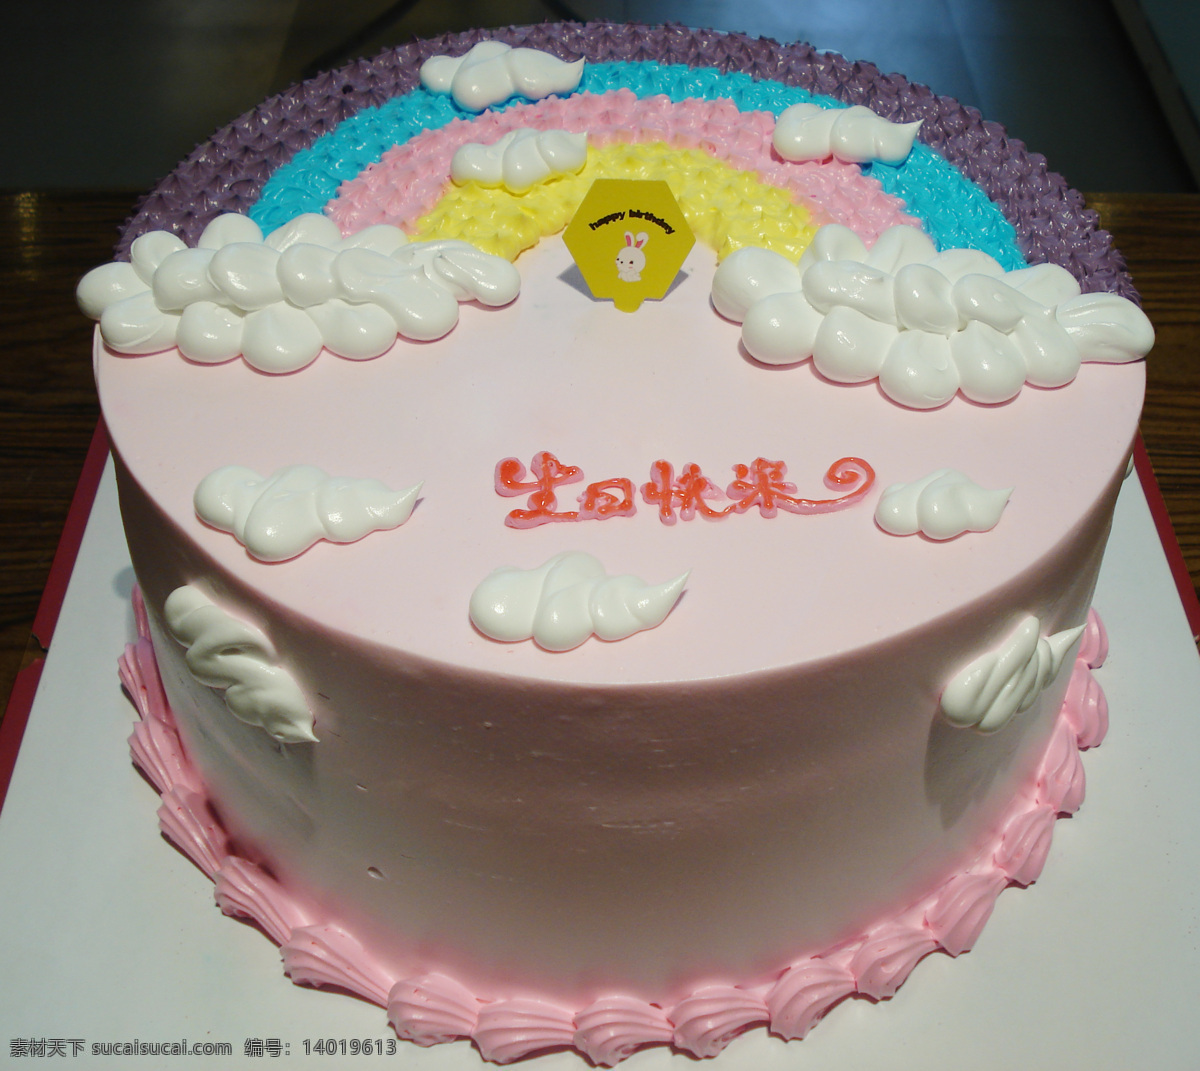 生日蛋糕 彩虹蛋糕 七彩蛋糕 云朵蛋糕 生日快乐 奶油蛋糕 卡通蛋糕 可爱卡通 漂亮蛋糕 水果 水果蛋糕 蛋糕 生日 西餐美食 餐饮美食